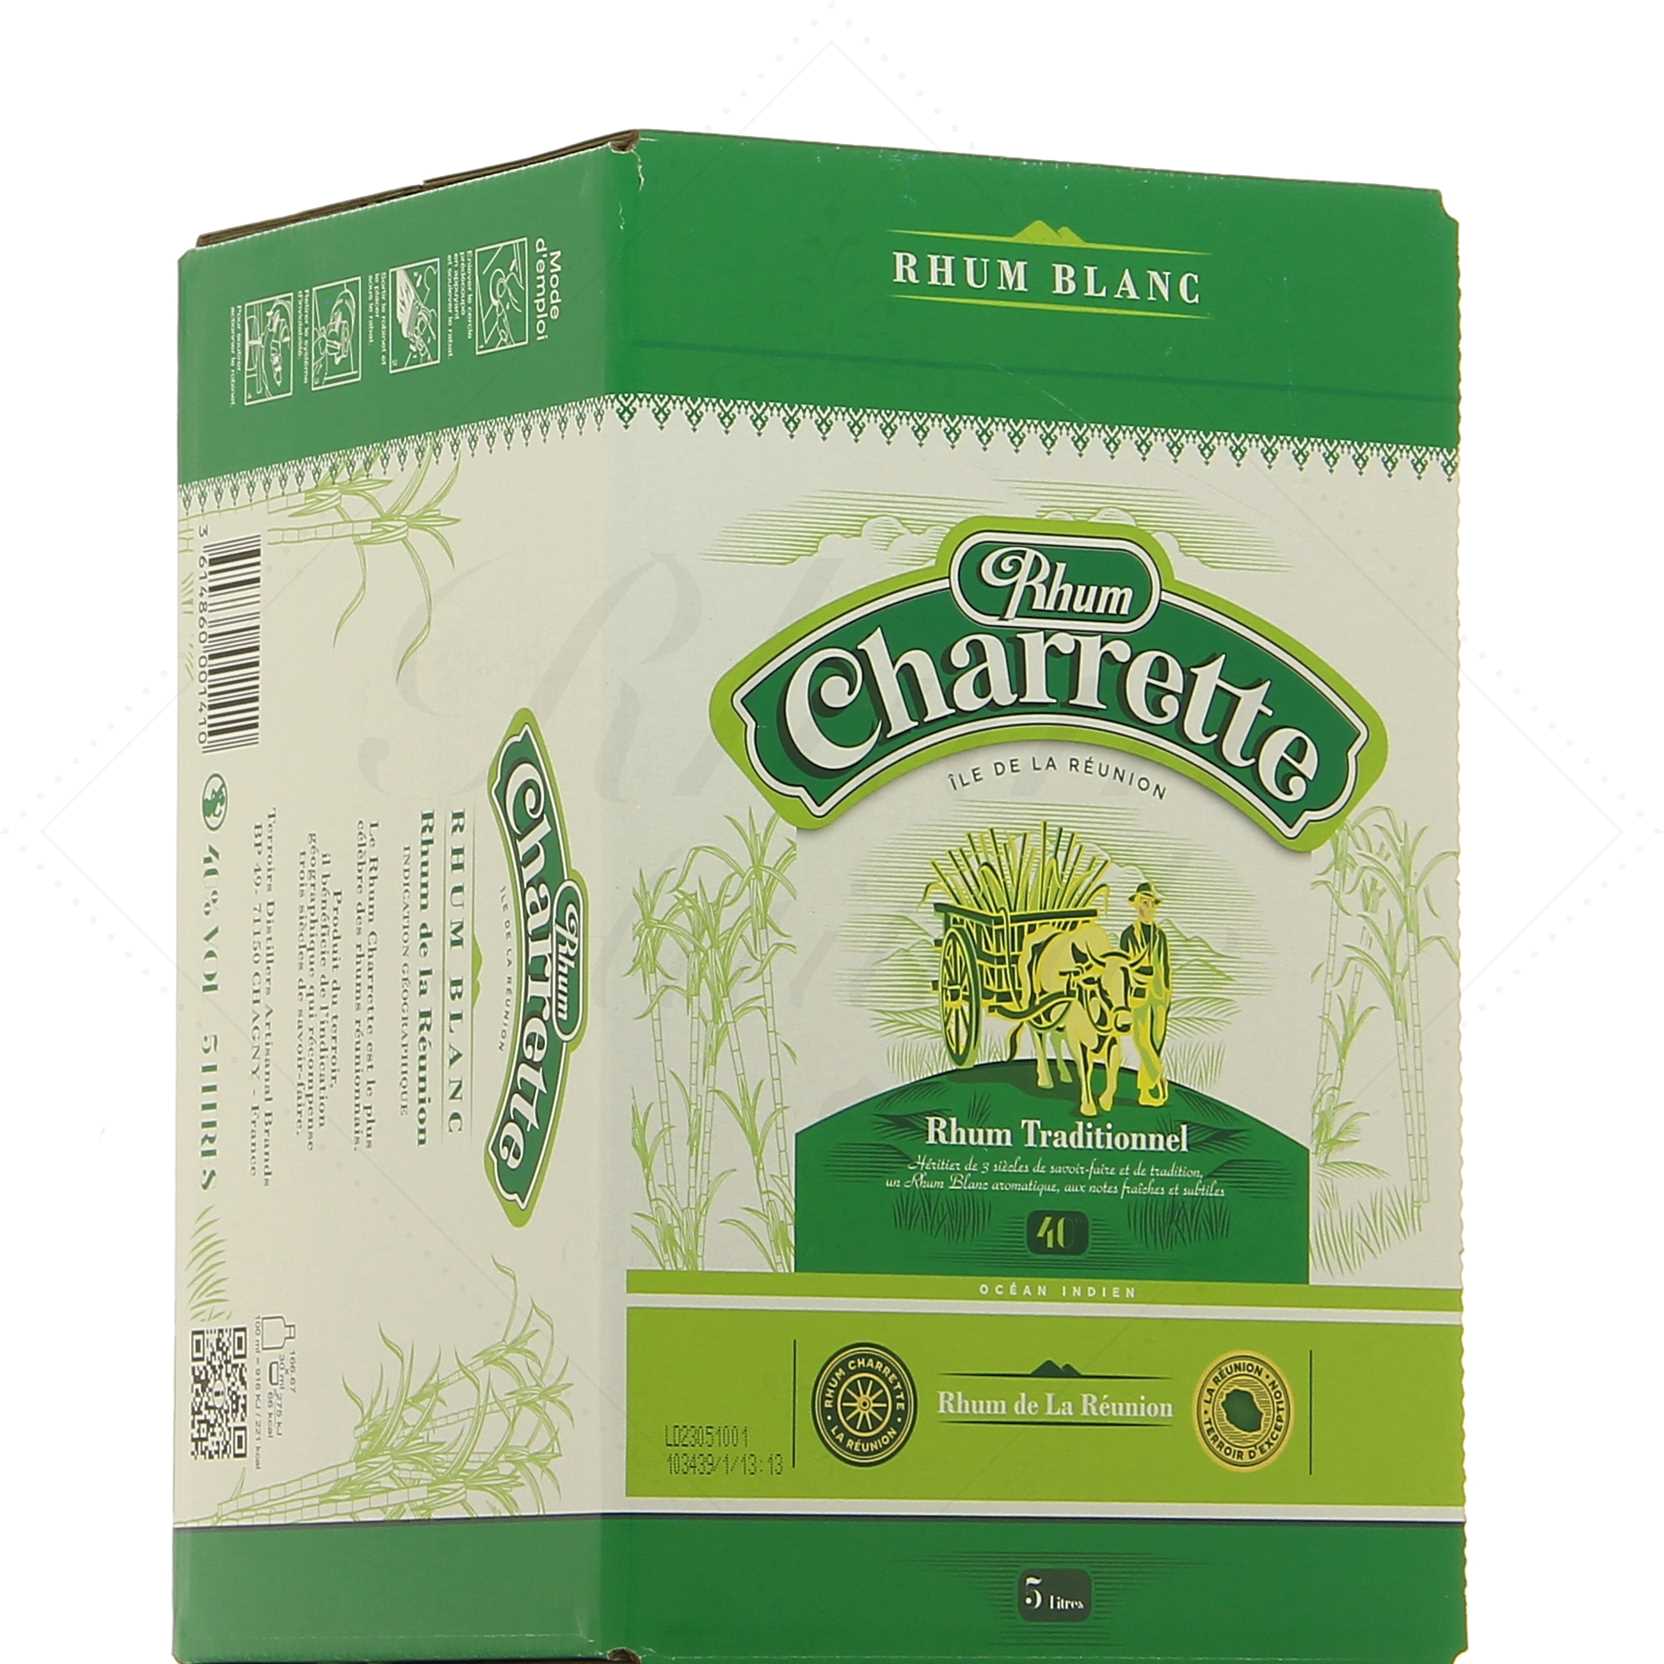 Rhum Charrette traditionel 49°, cubi Edition limitée Case les